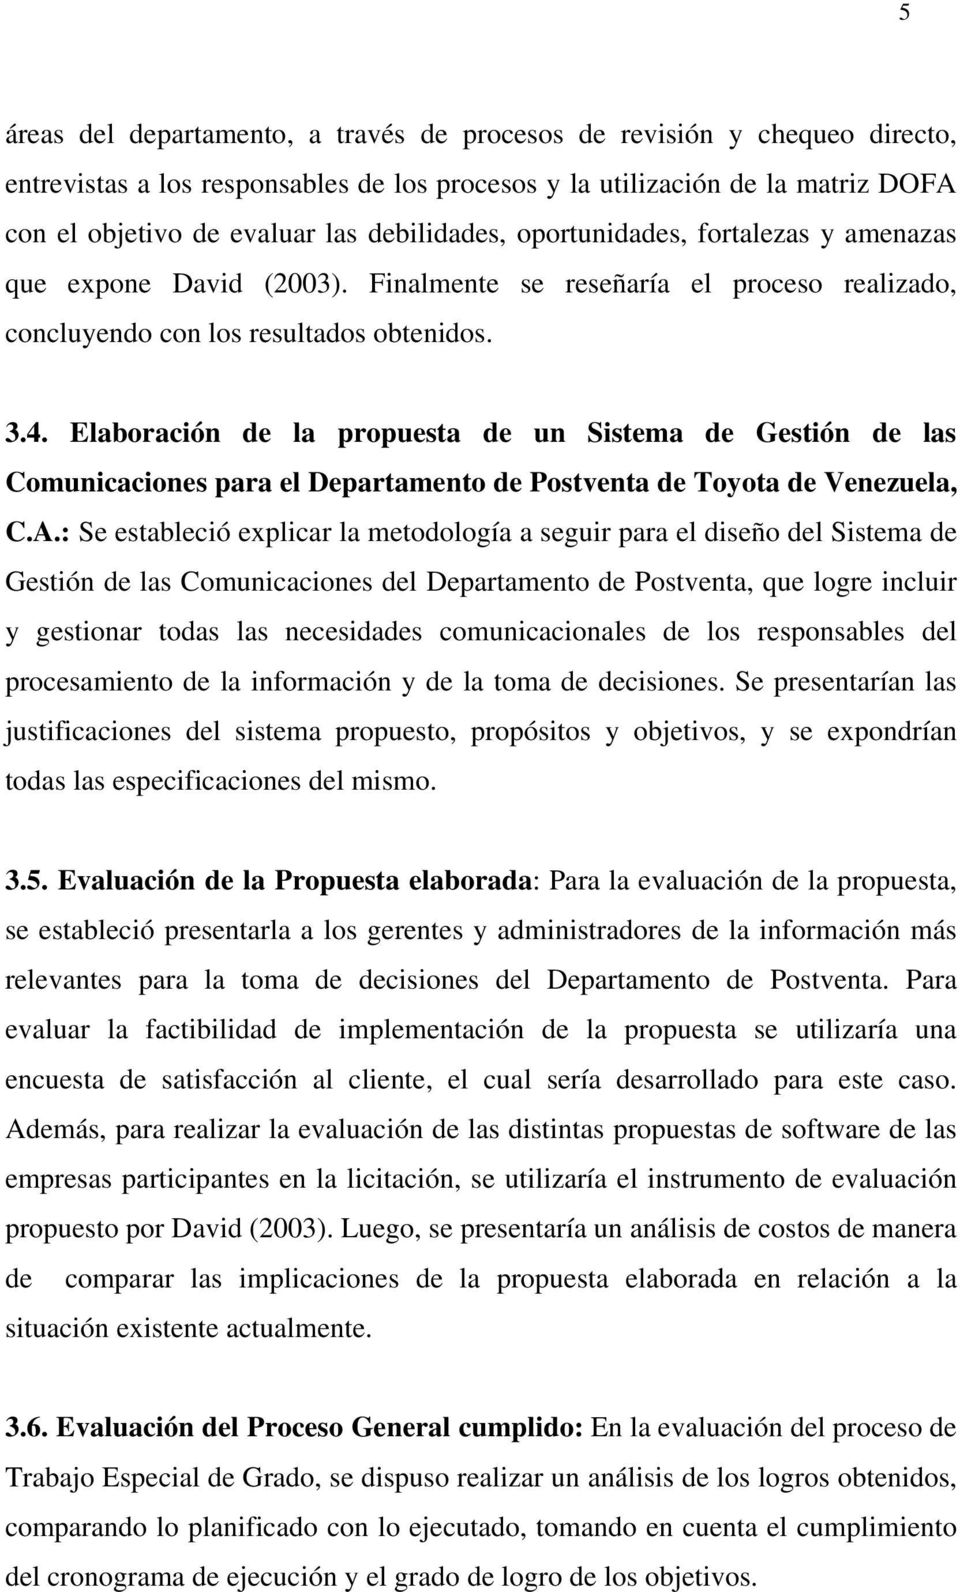 Elaboración de la propuesta de un Sistema de Gestión de las Comunicaciones para el Departamento de Postventa de Toyota de Venezuela, C.A.